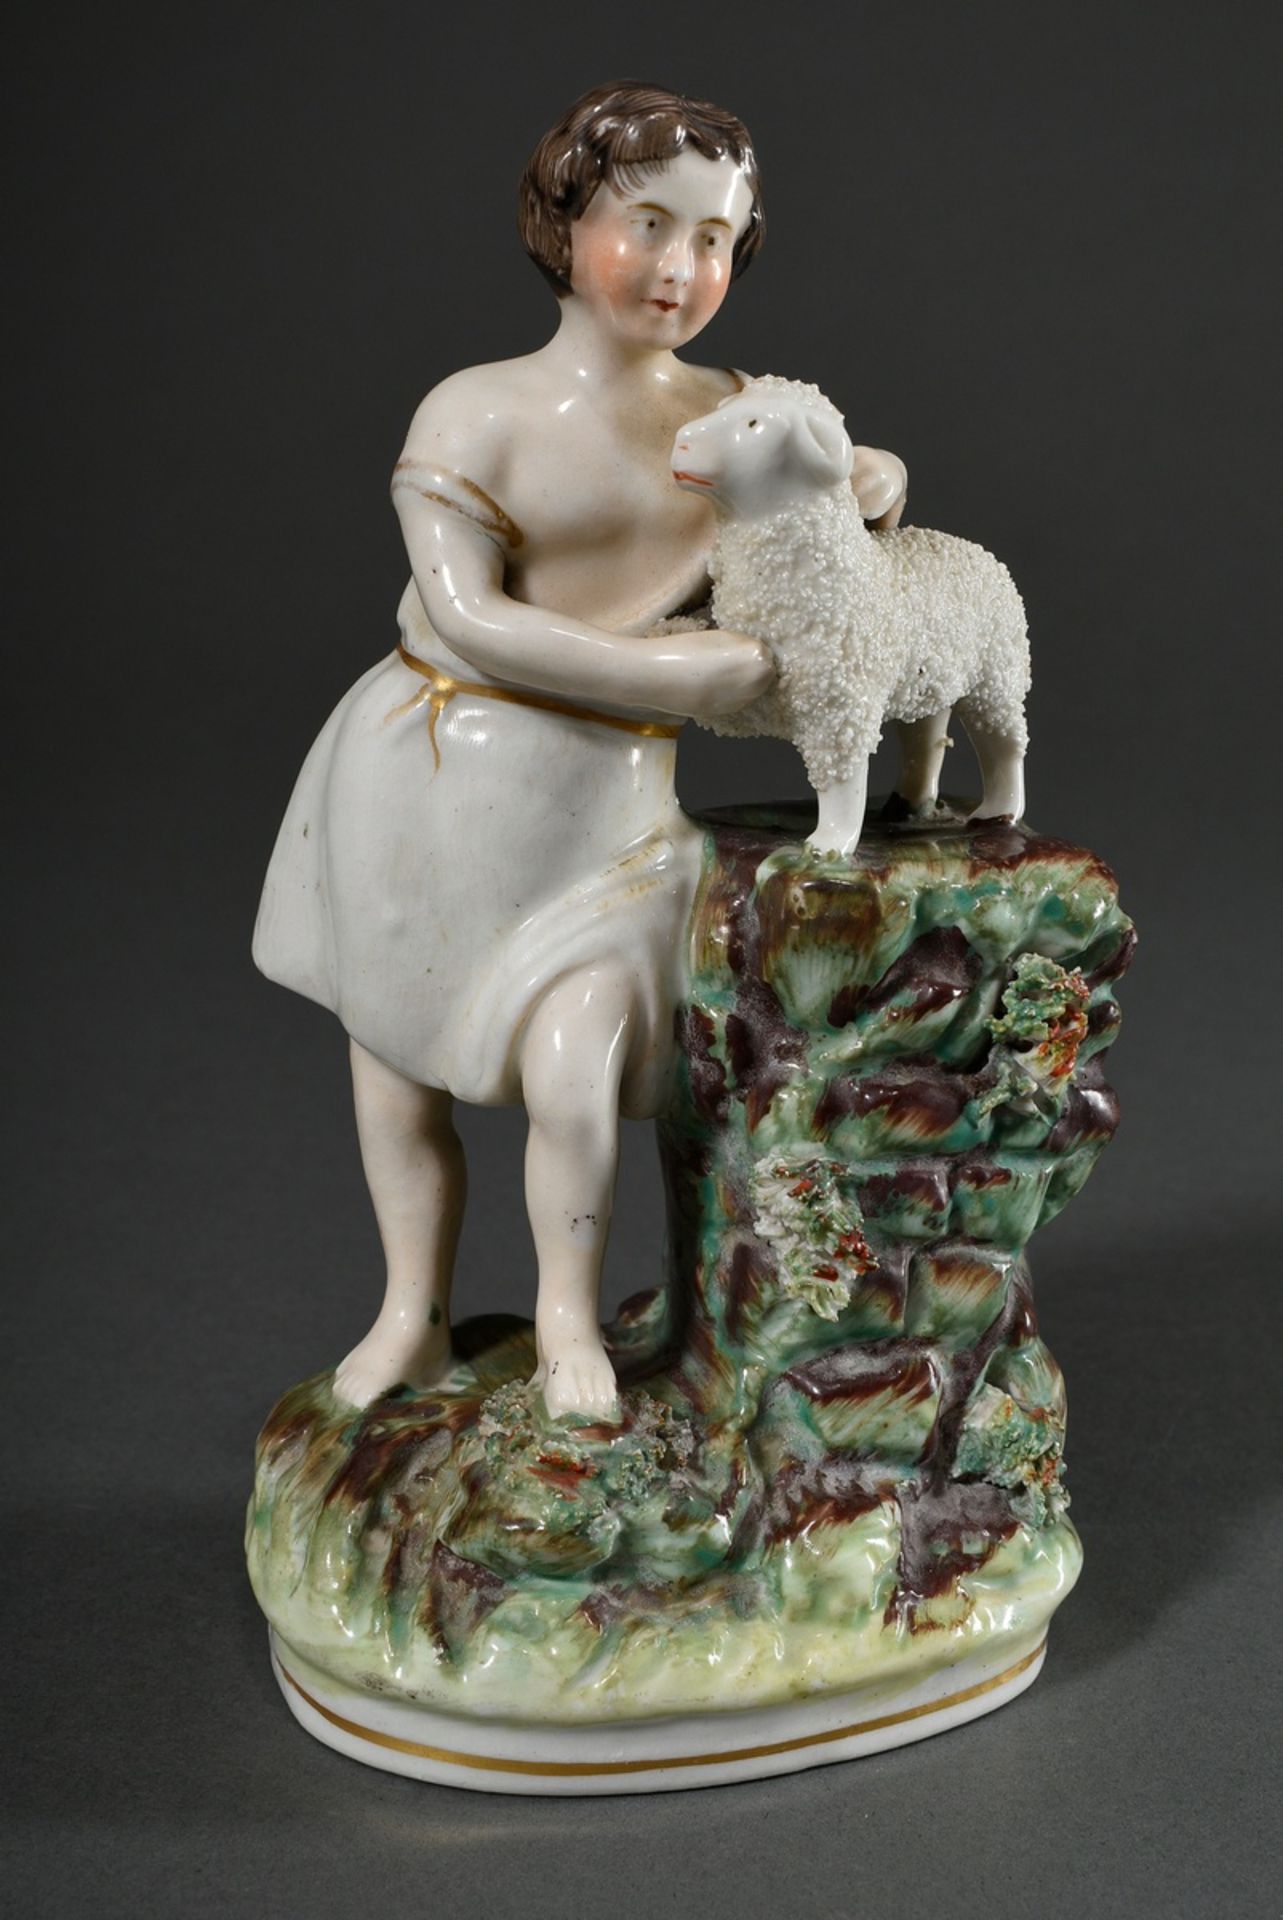 2 Diverse Staffordshire Keramik Figuren "Junge mit Lamm" und "Liegendes Schaf", farbig staffiert, 1 - Bild 3 aus 9